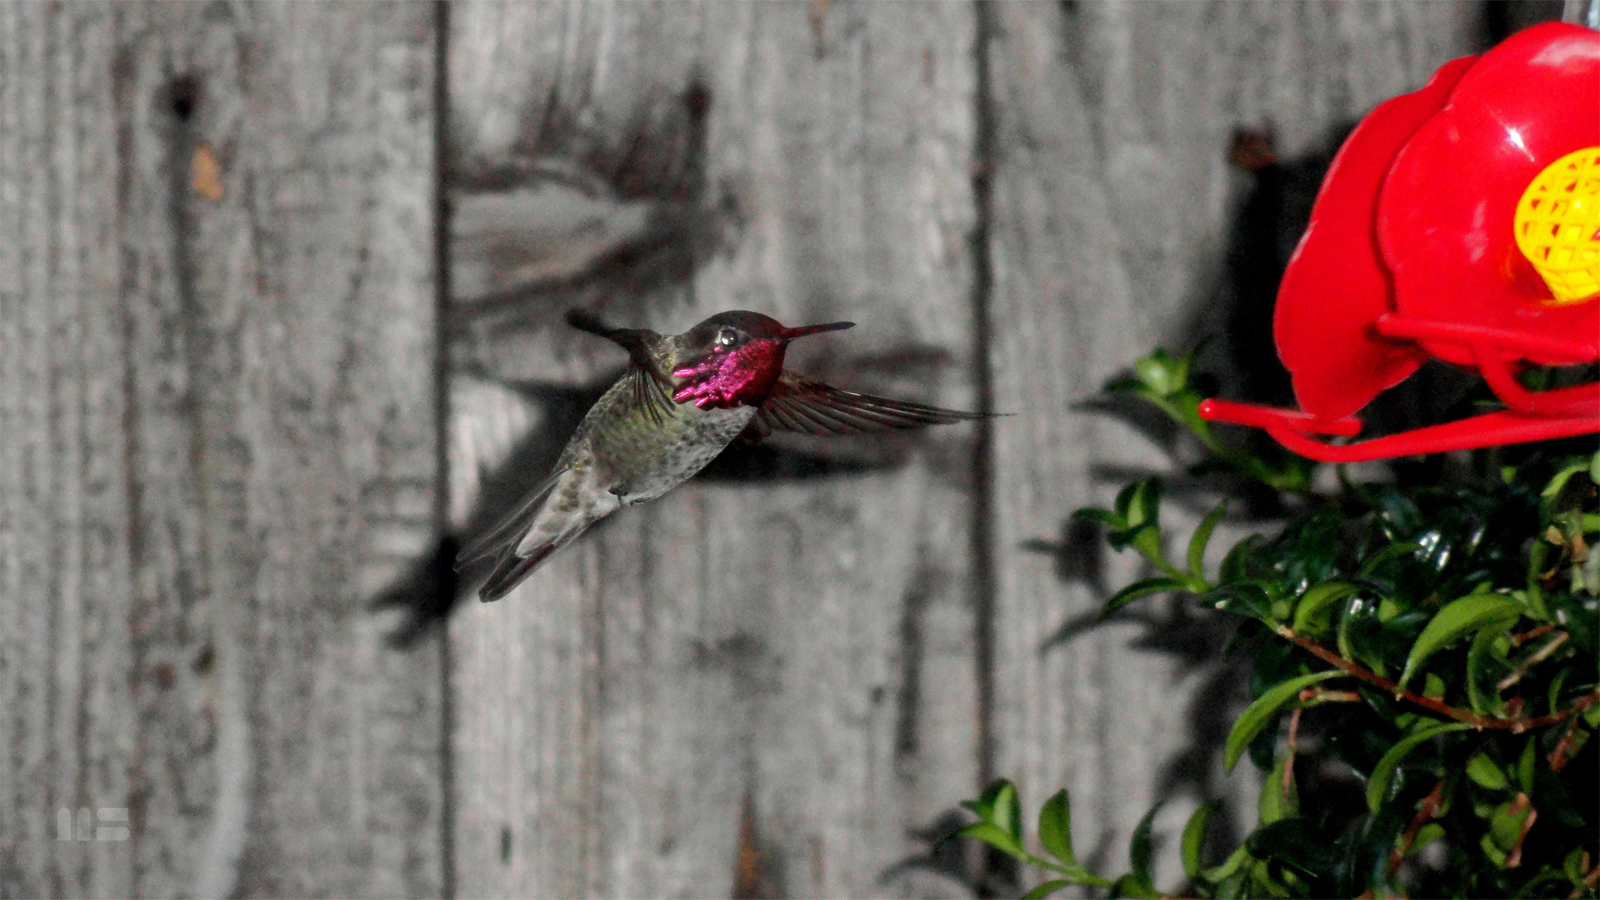 ED SULLIVAN Collectible Hummingbird Photo Print by artist Mark Smollin